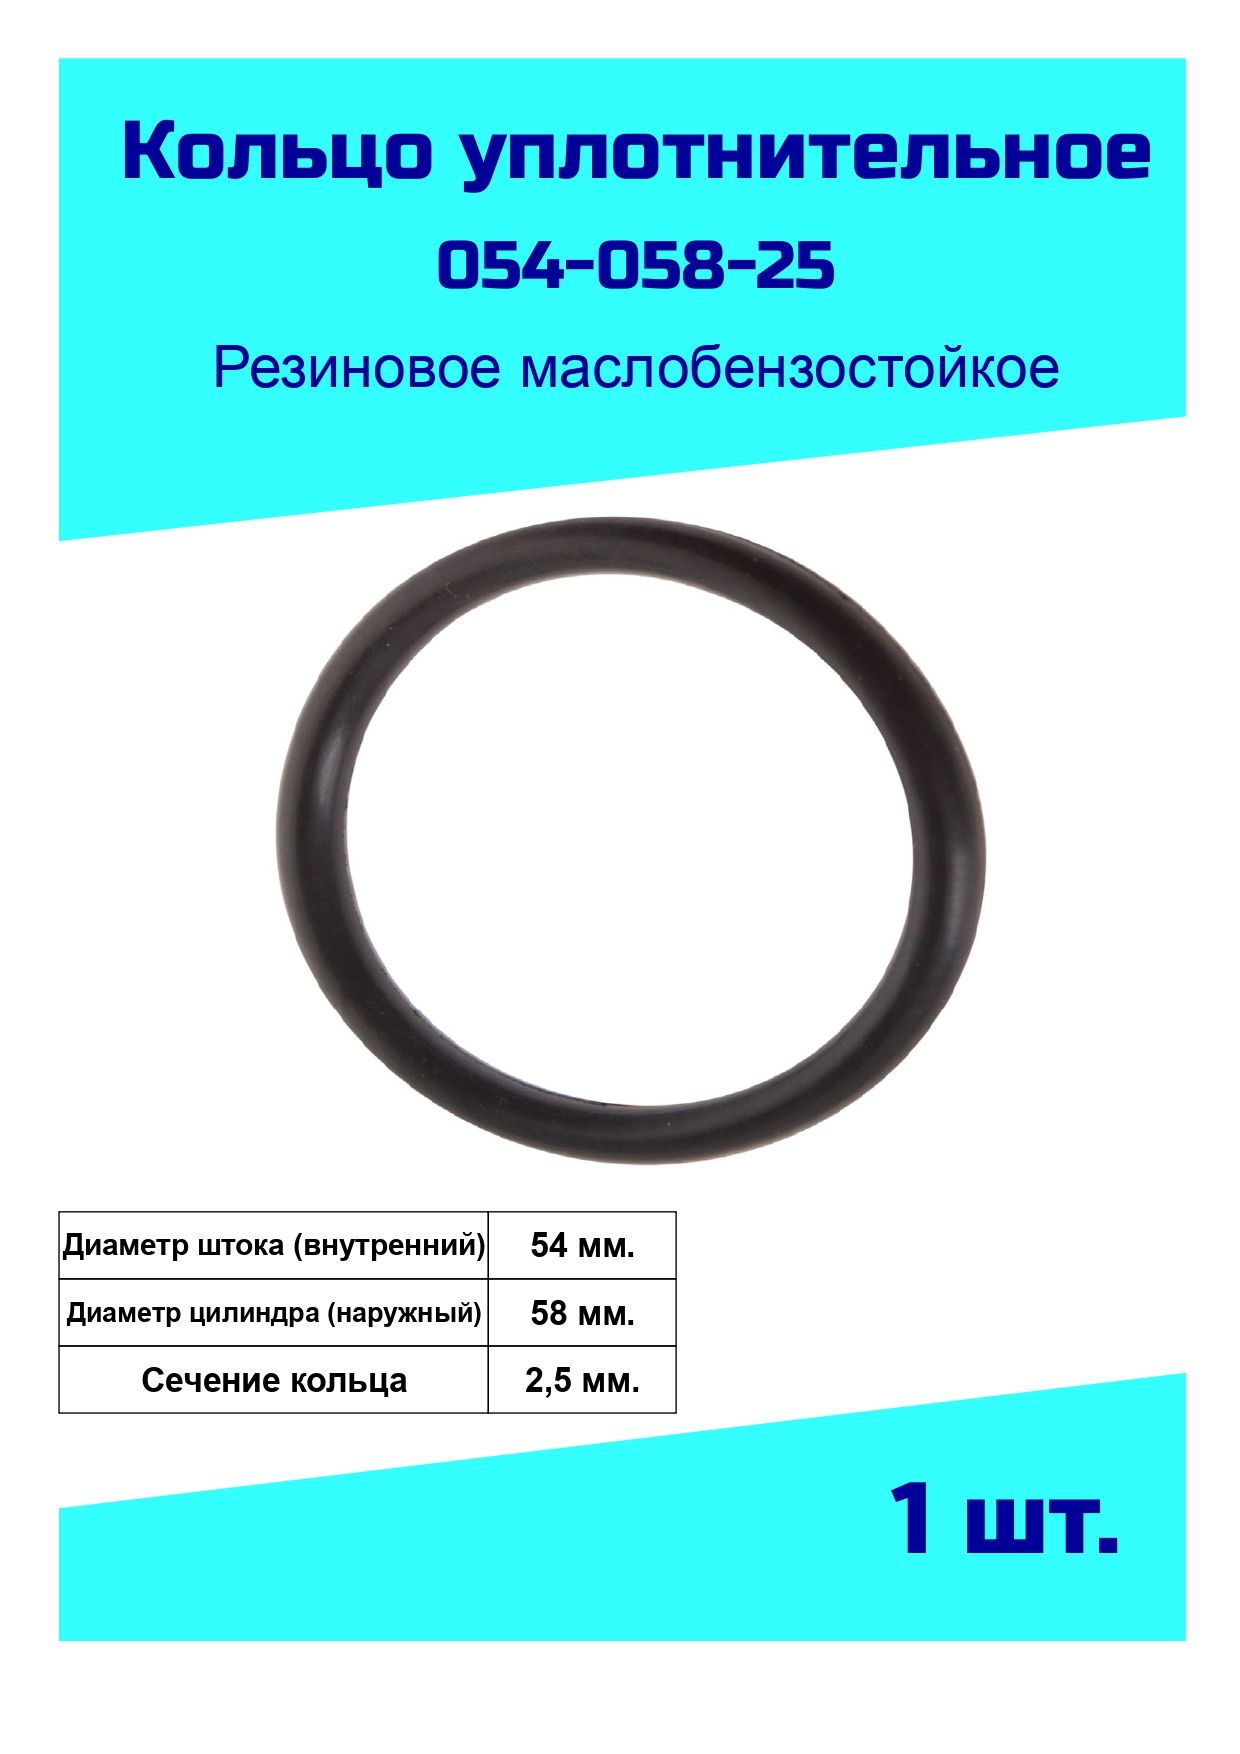 Кольцоуплотнительное54мм.резиновое(054-058-25)арт.054-058-25Кольцоуплотнительноерезиновое